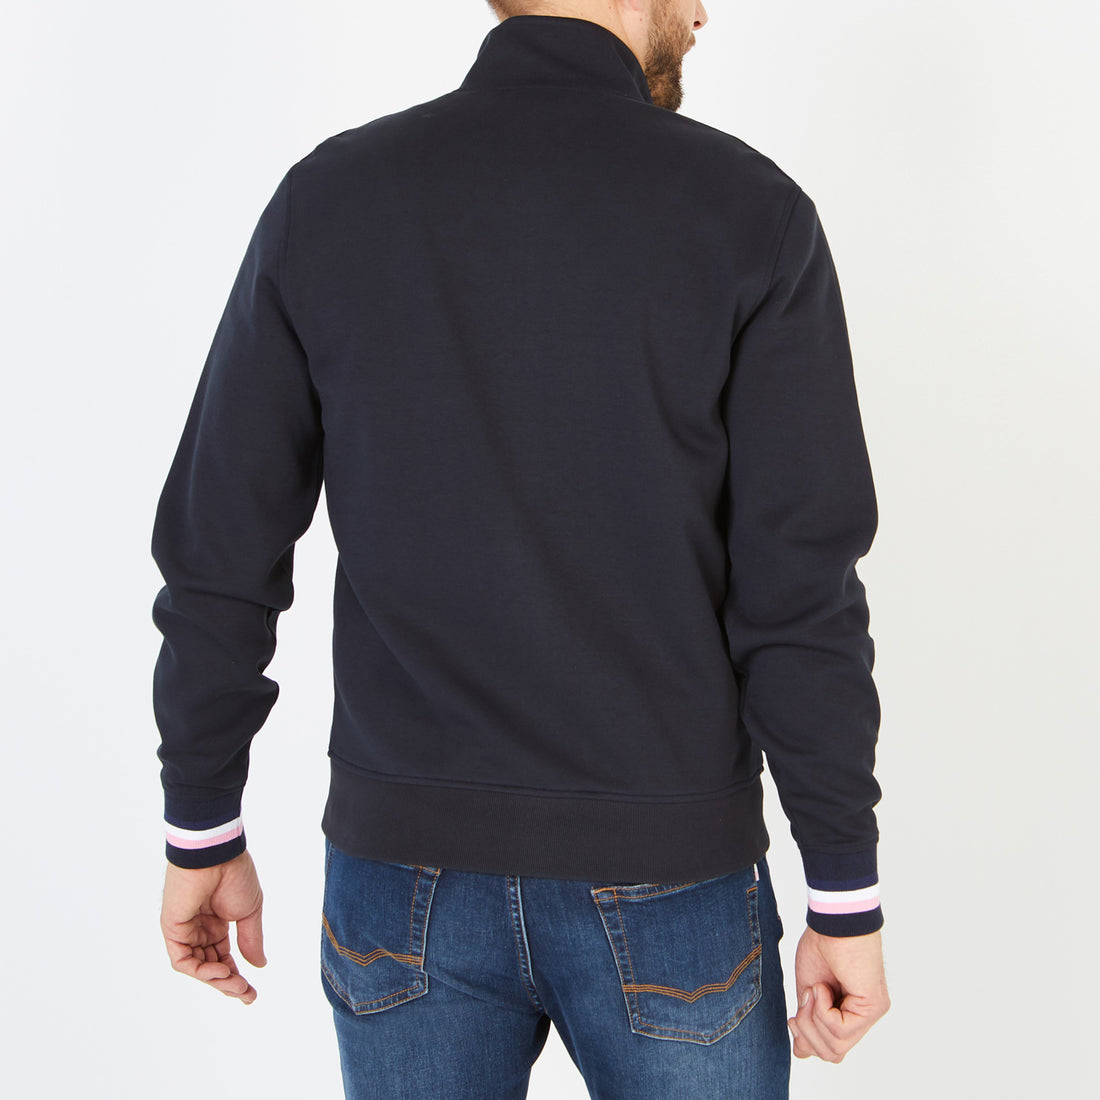 Navy Blue Zip Sweatshirt With Stand-Up Collar